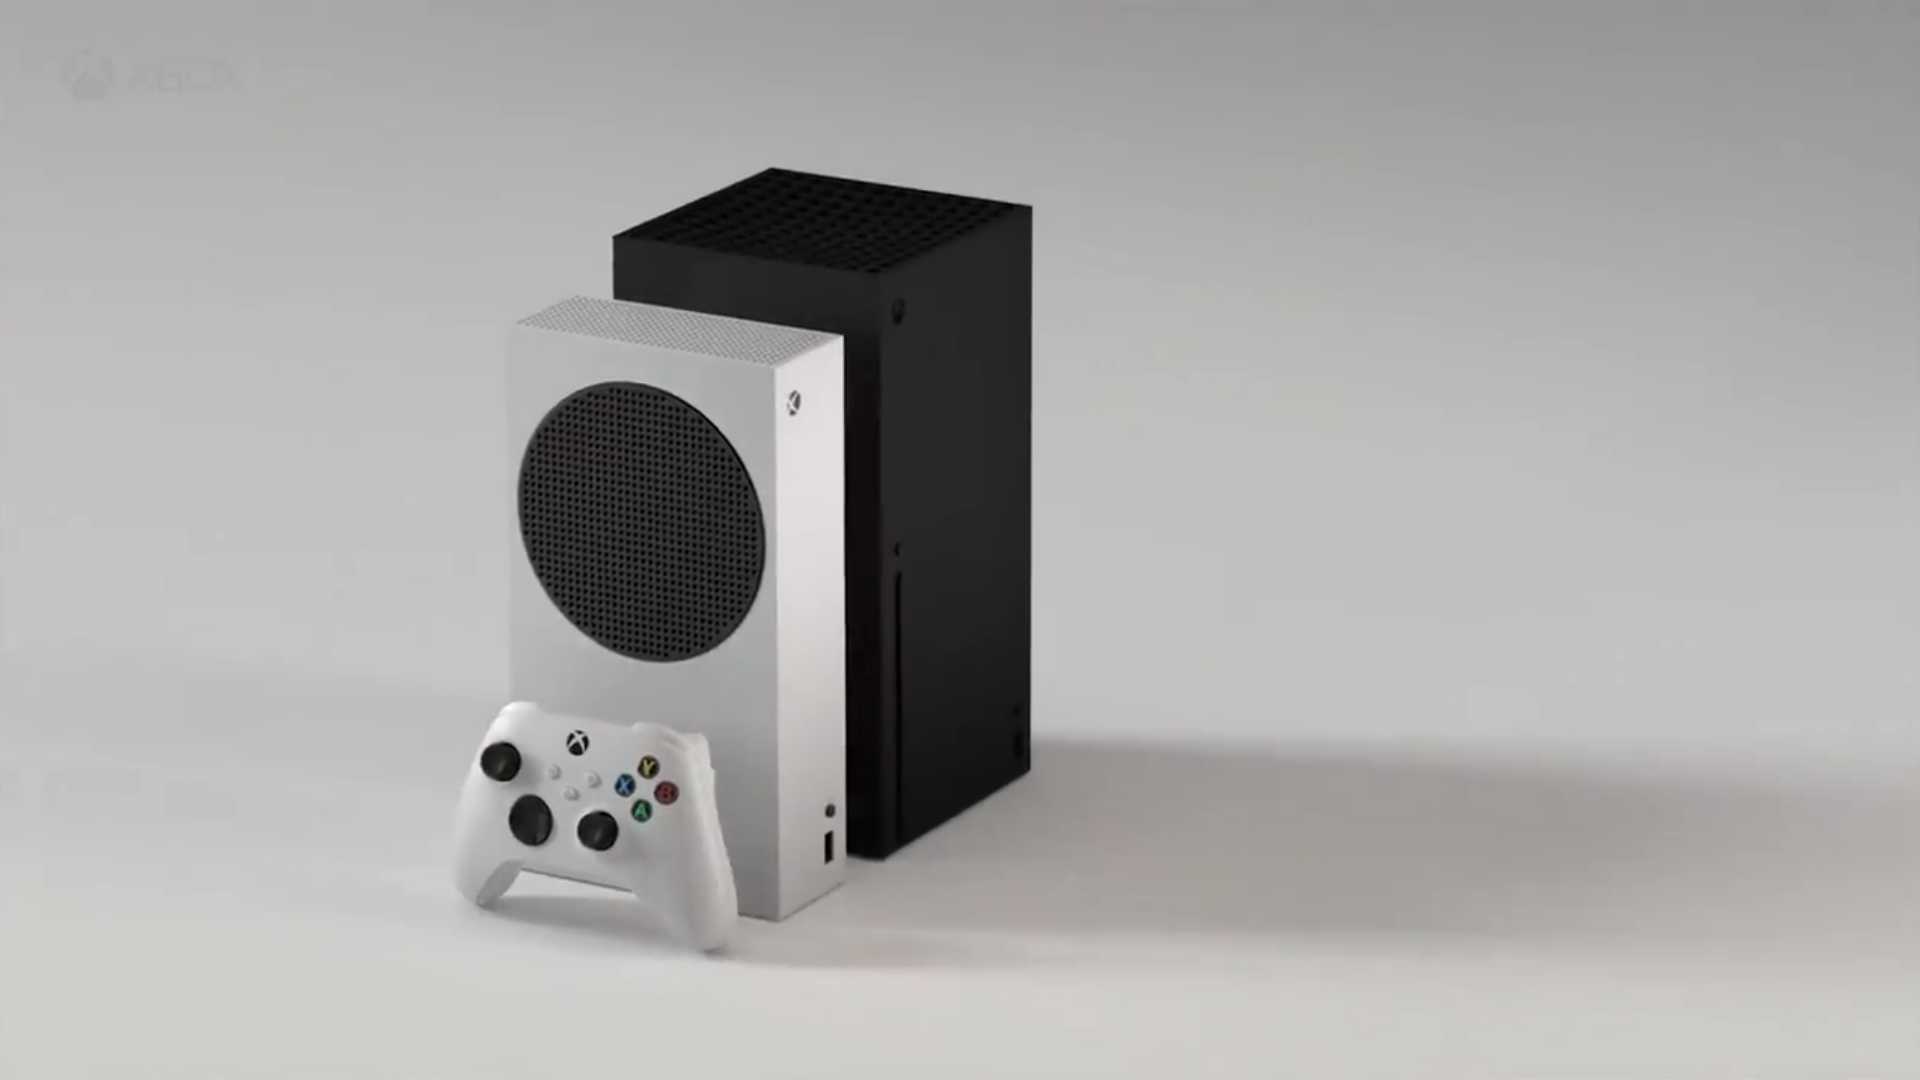 Priame porovnanie Xboxu Series S (biela konzola) a Xboxu Series X (čierna konzola).